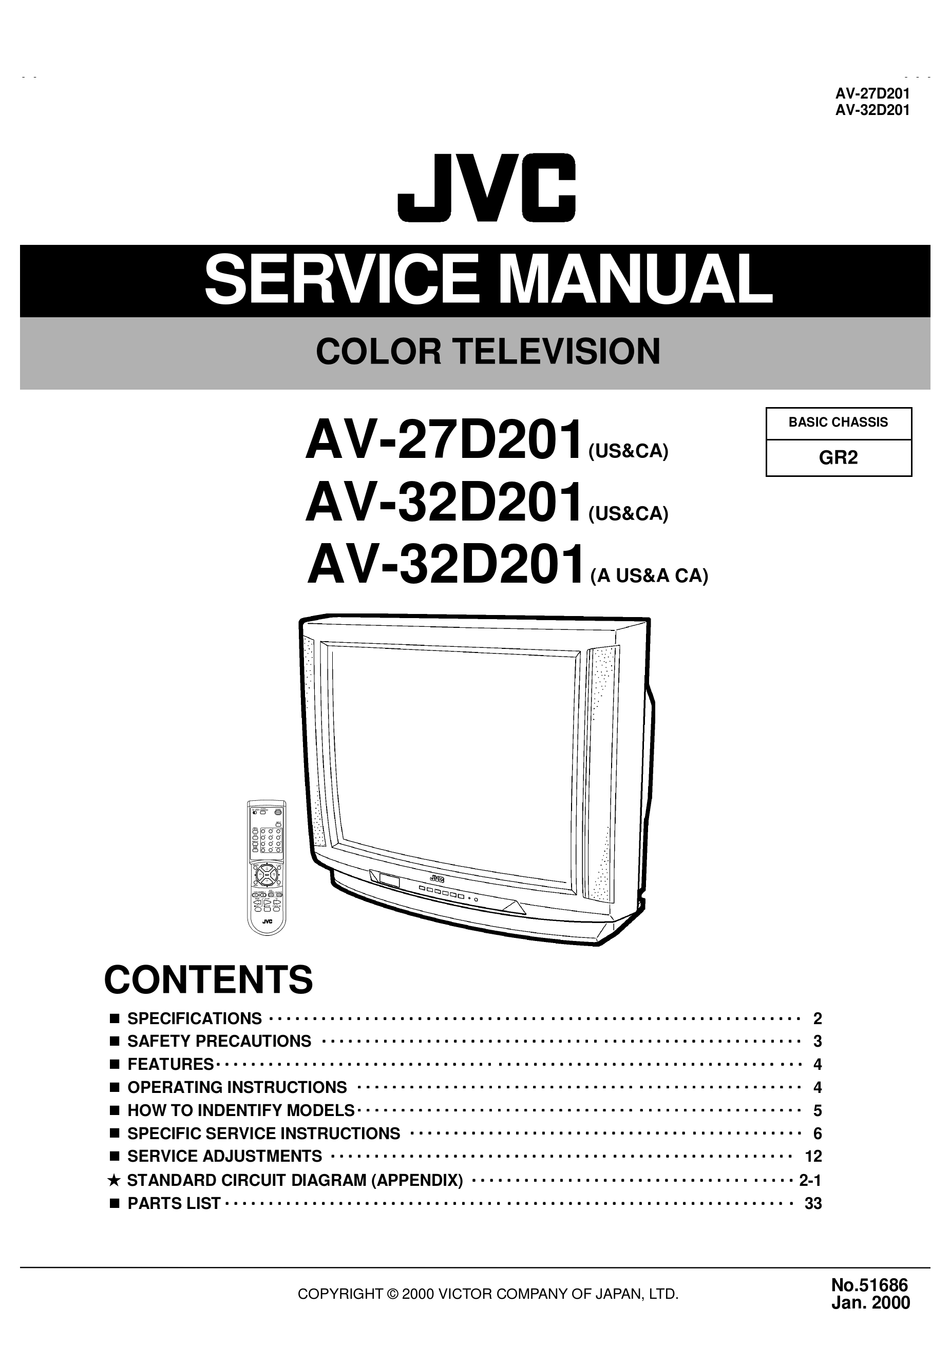 JVC AV-27D201 SERVICE MANUAL Pdf Download | ManualsLib